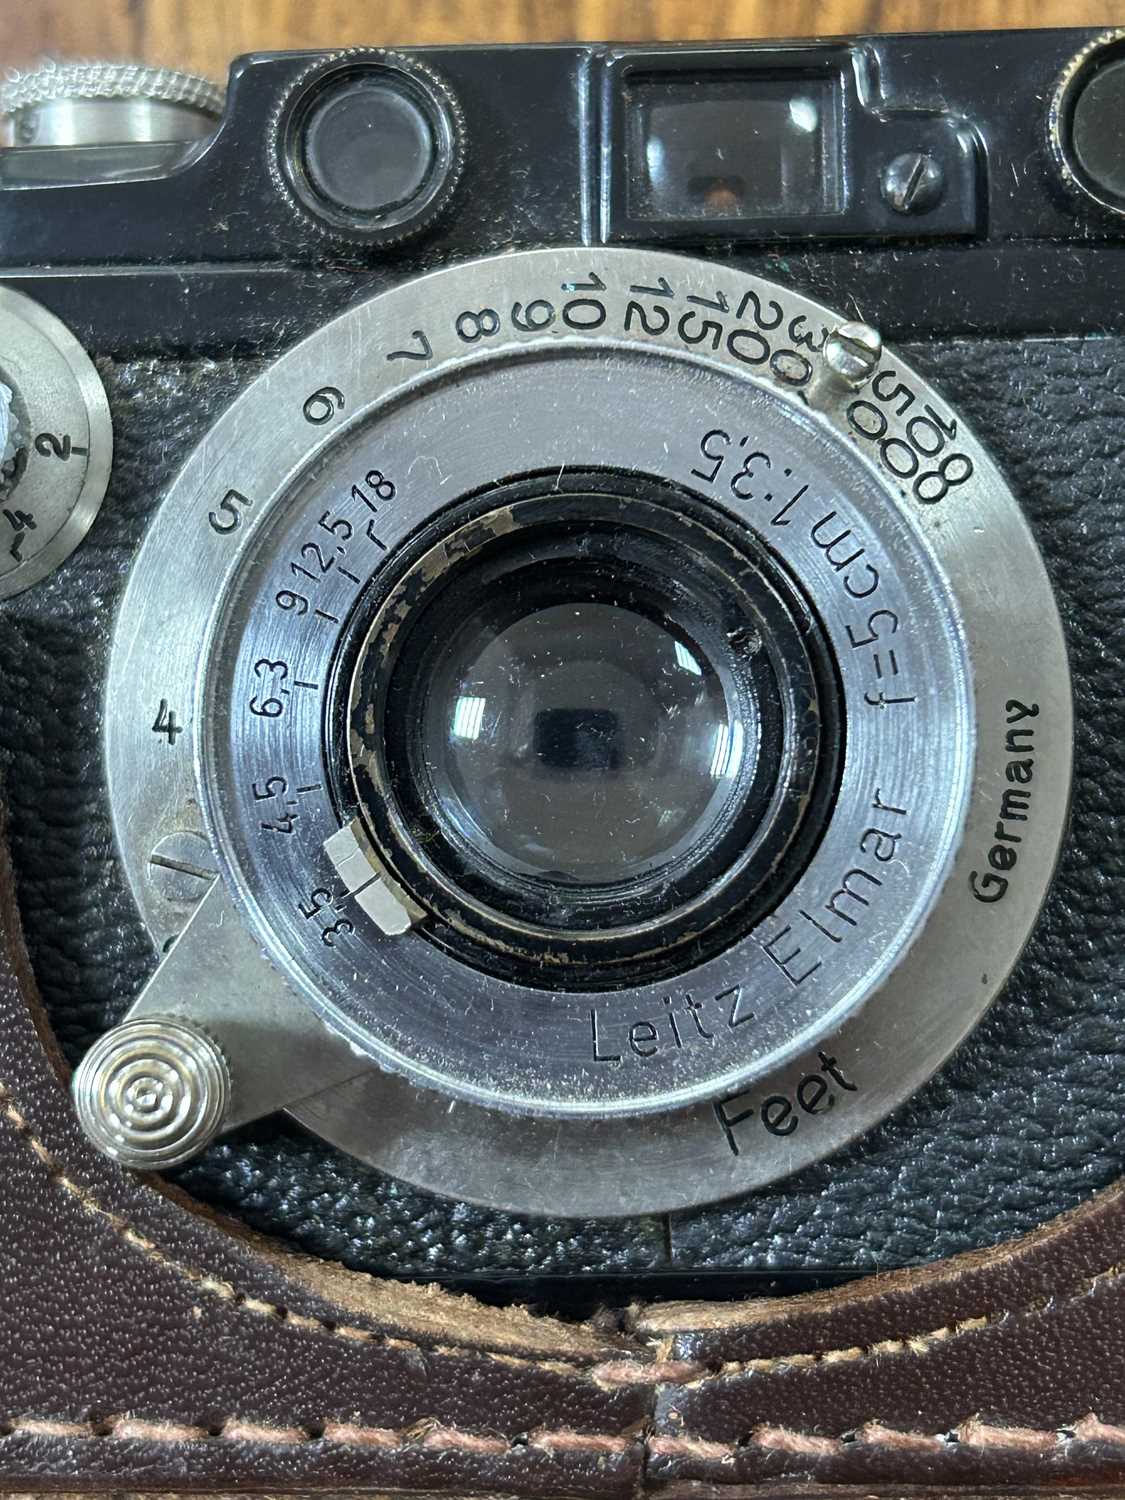 A Leica camera - Image 9 of 12